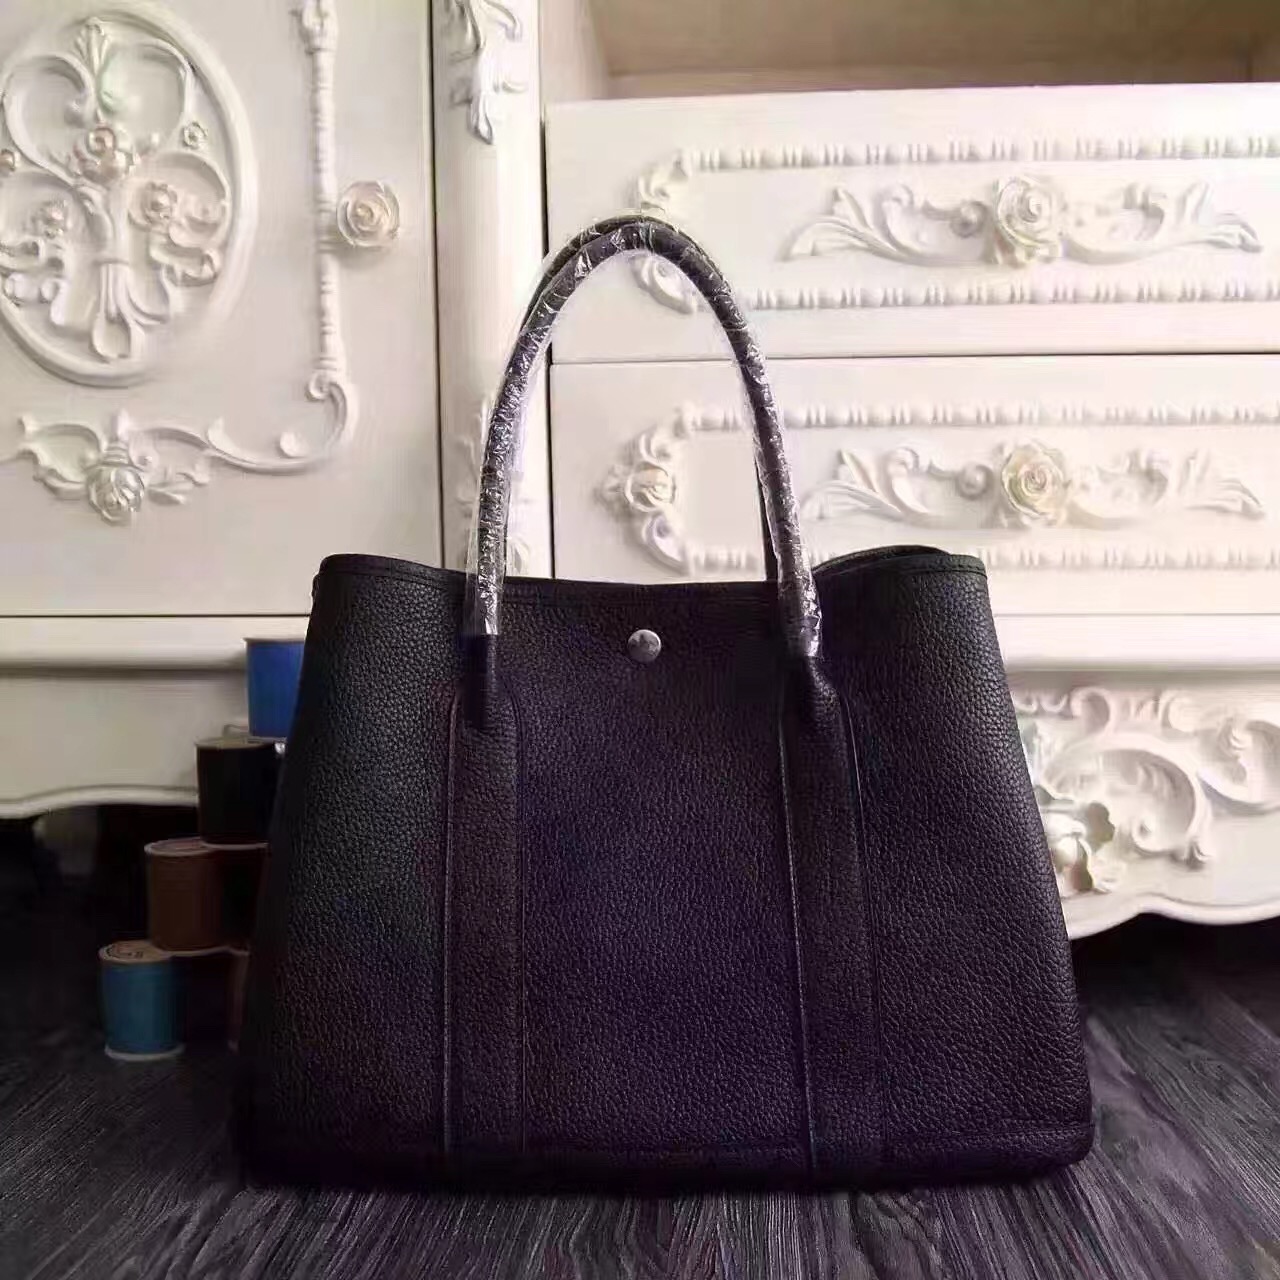 Hermes Garden Party black top leather handbags